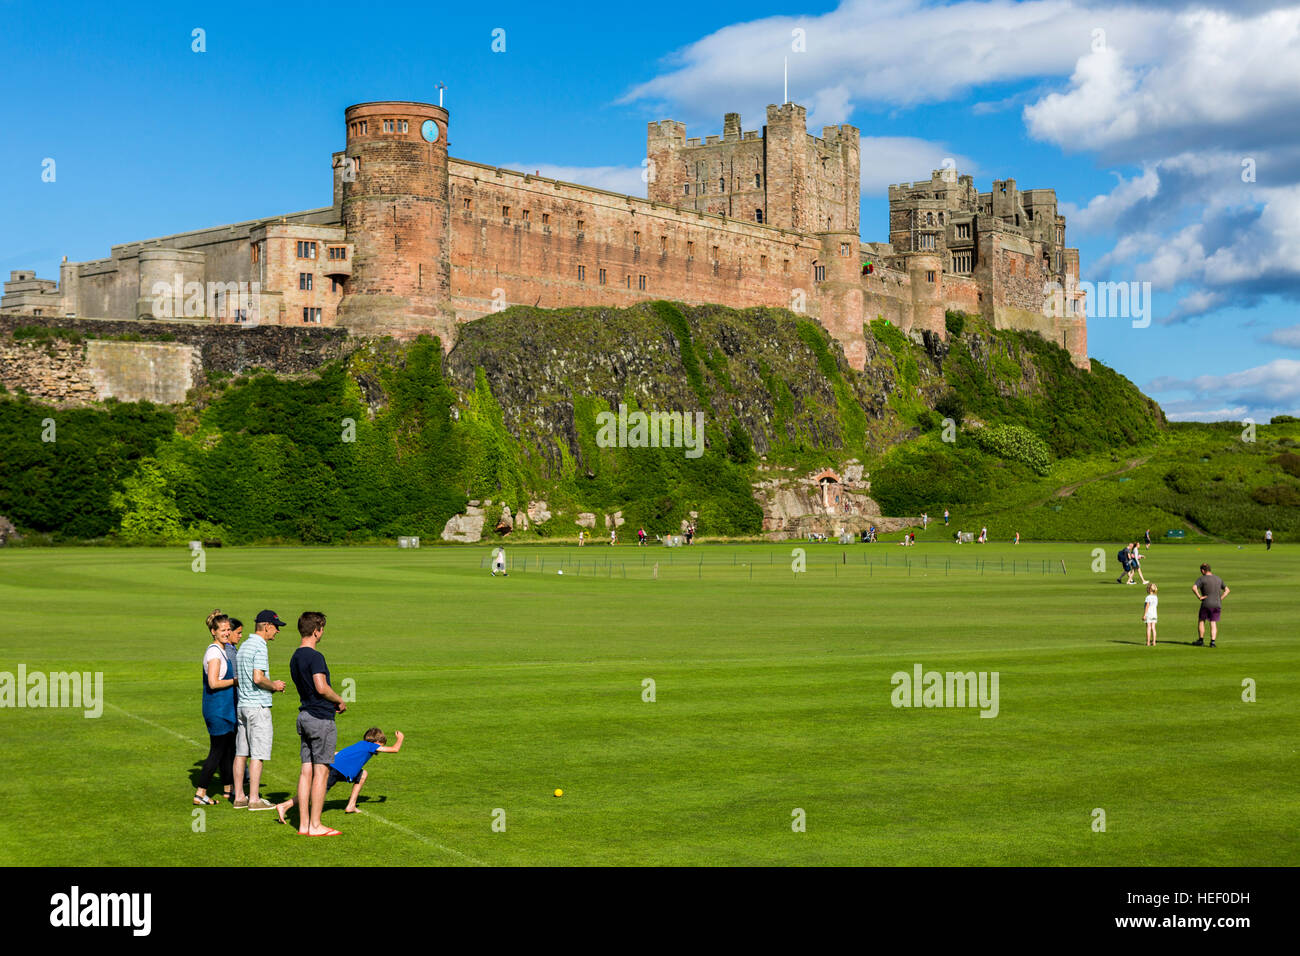 Un campo di gioco con i bambini a giocare a bocce ai piedi del castello di Bamburgh, Northumberland, Inghilterra, Regno Unito. Foto Stock